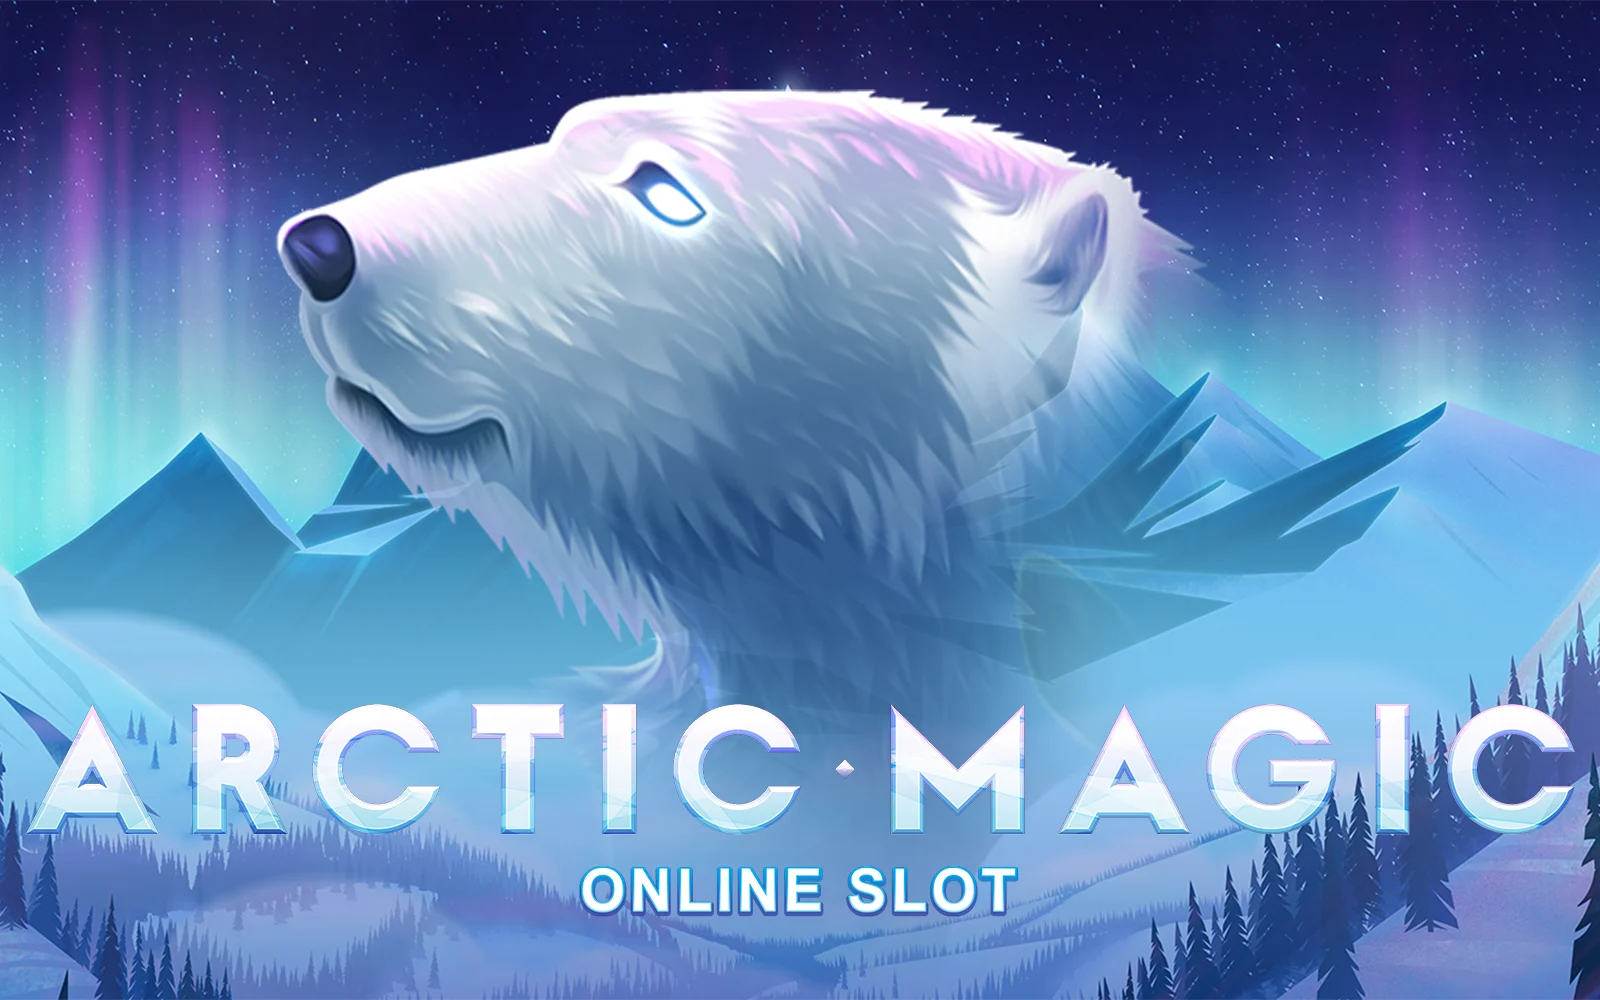 Play Arctic Magic on Starcasino.be online casino